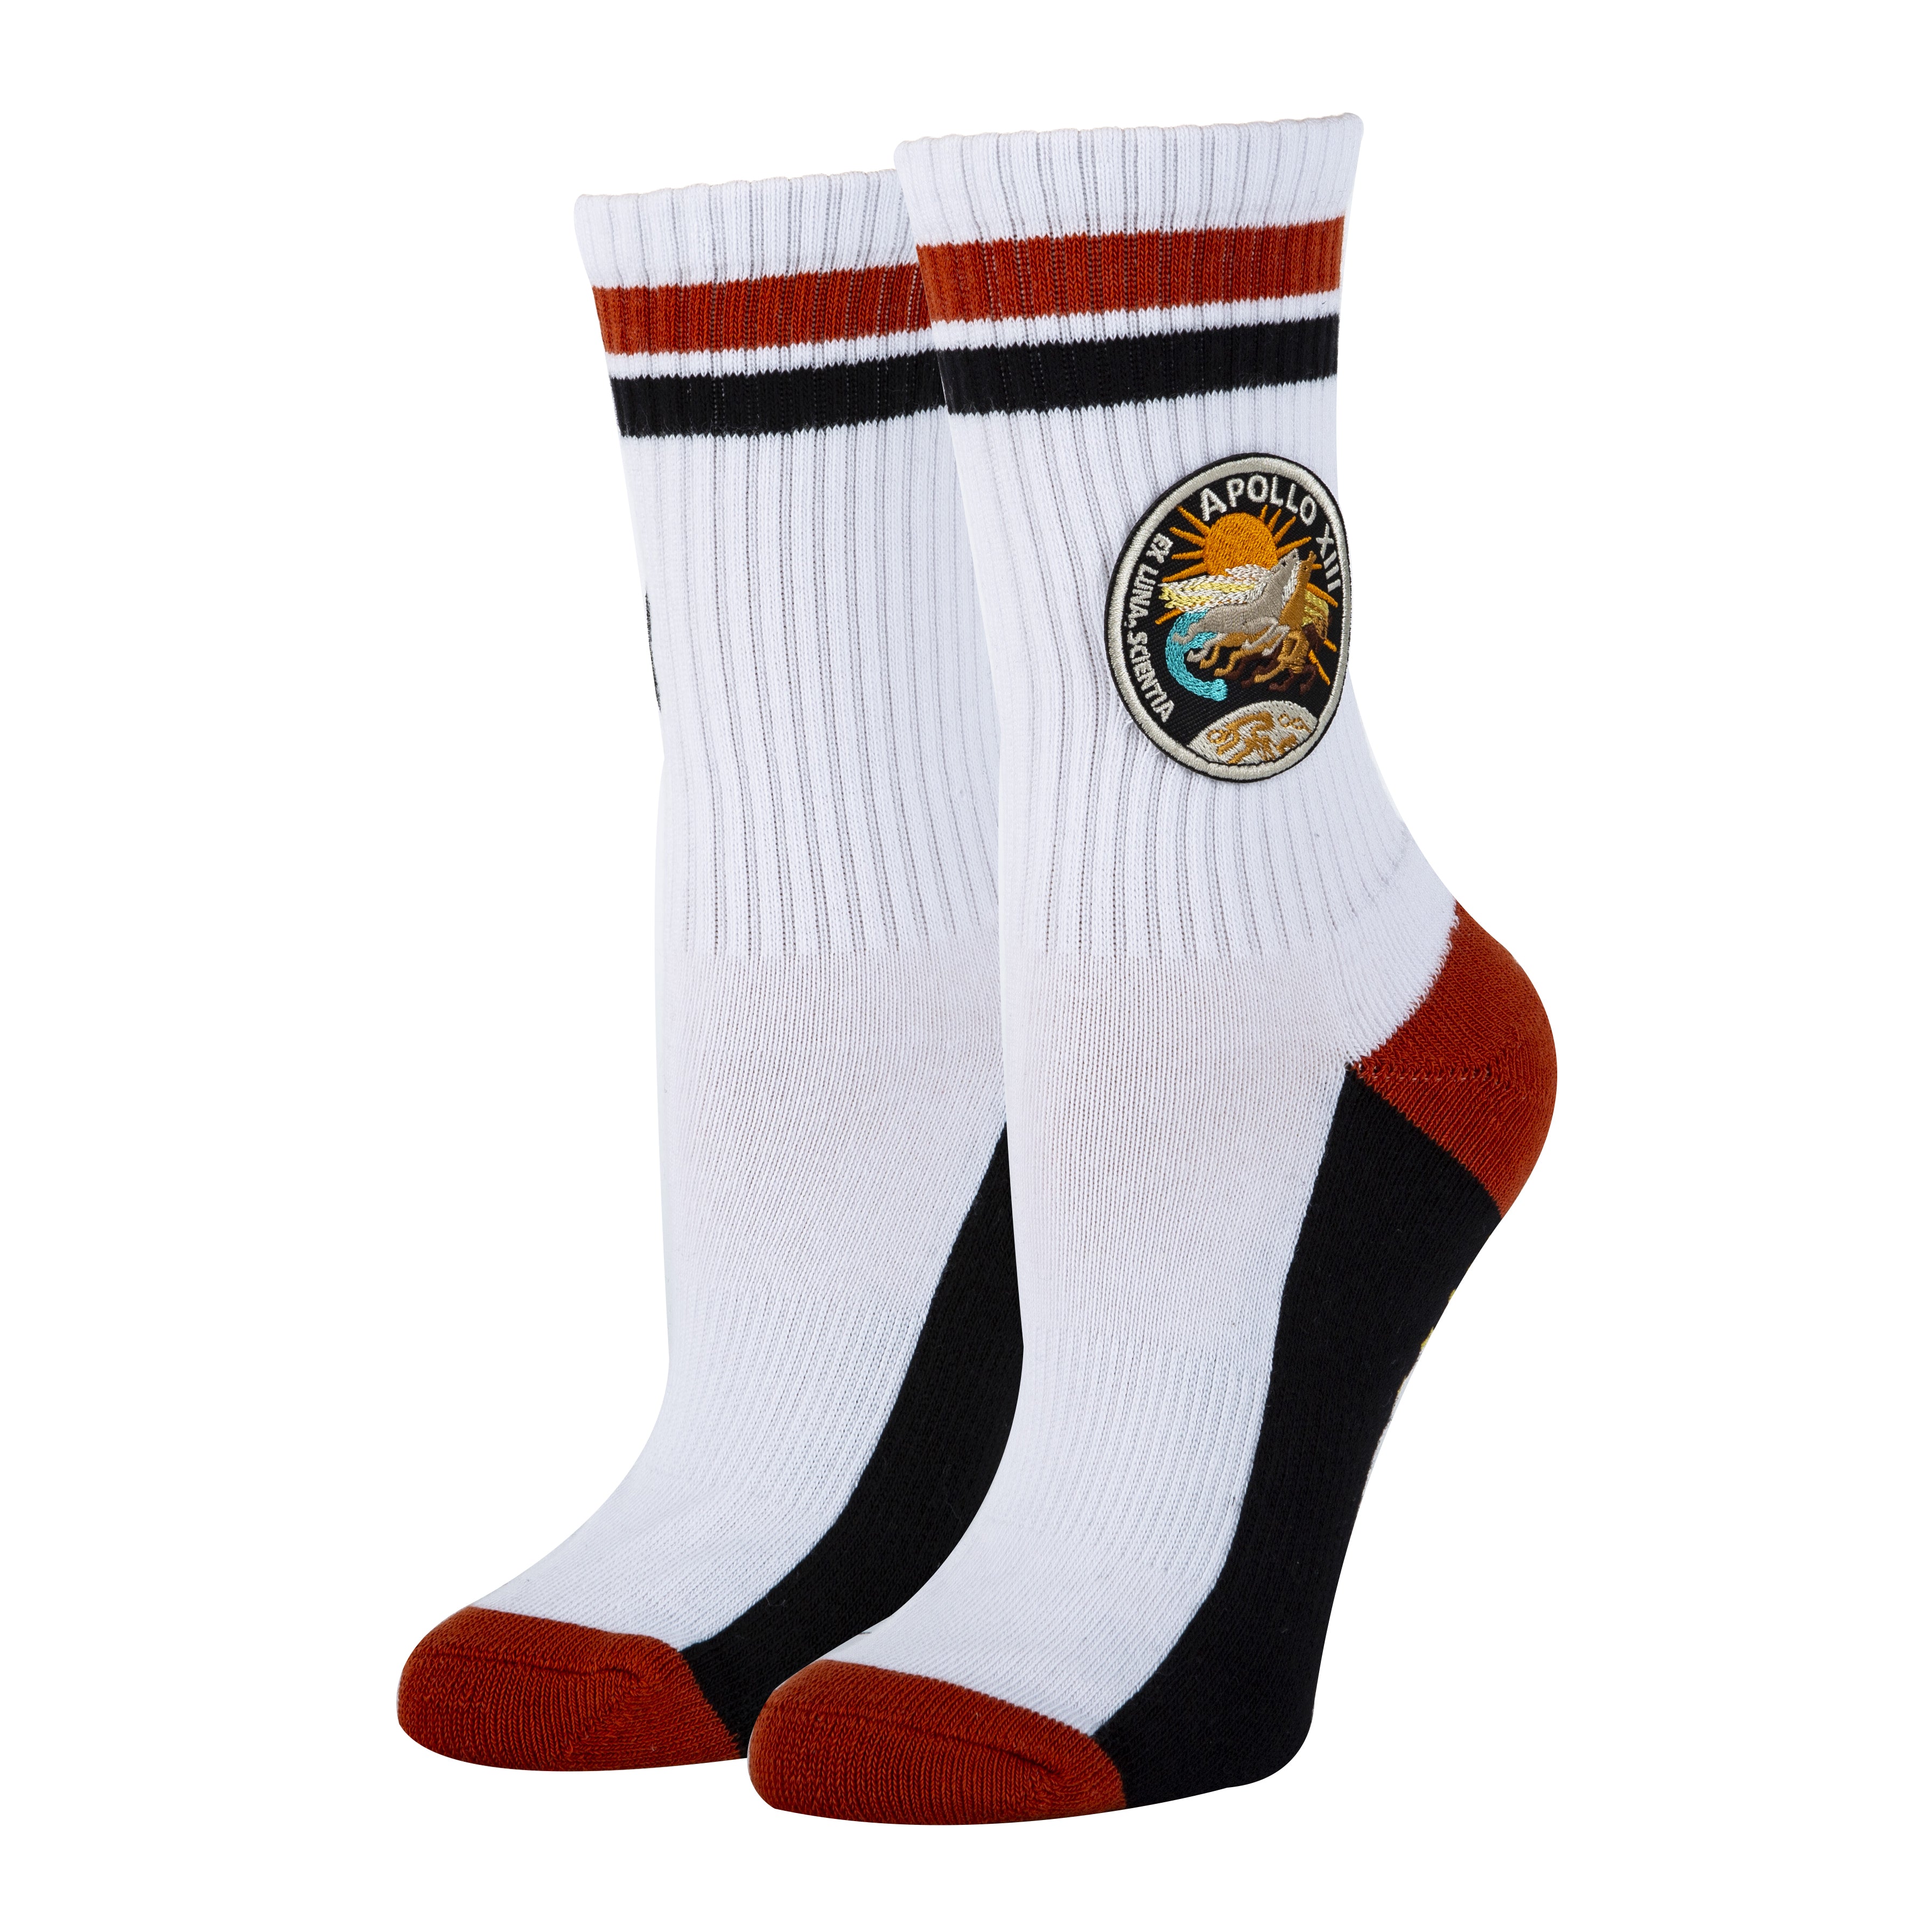 Apollo 13 Socks | Novelty Crew Socks For Women